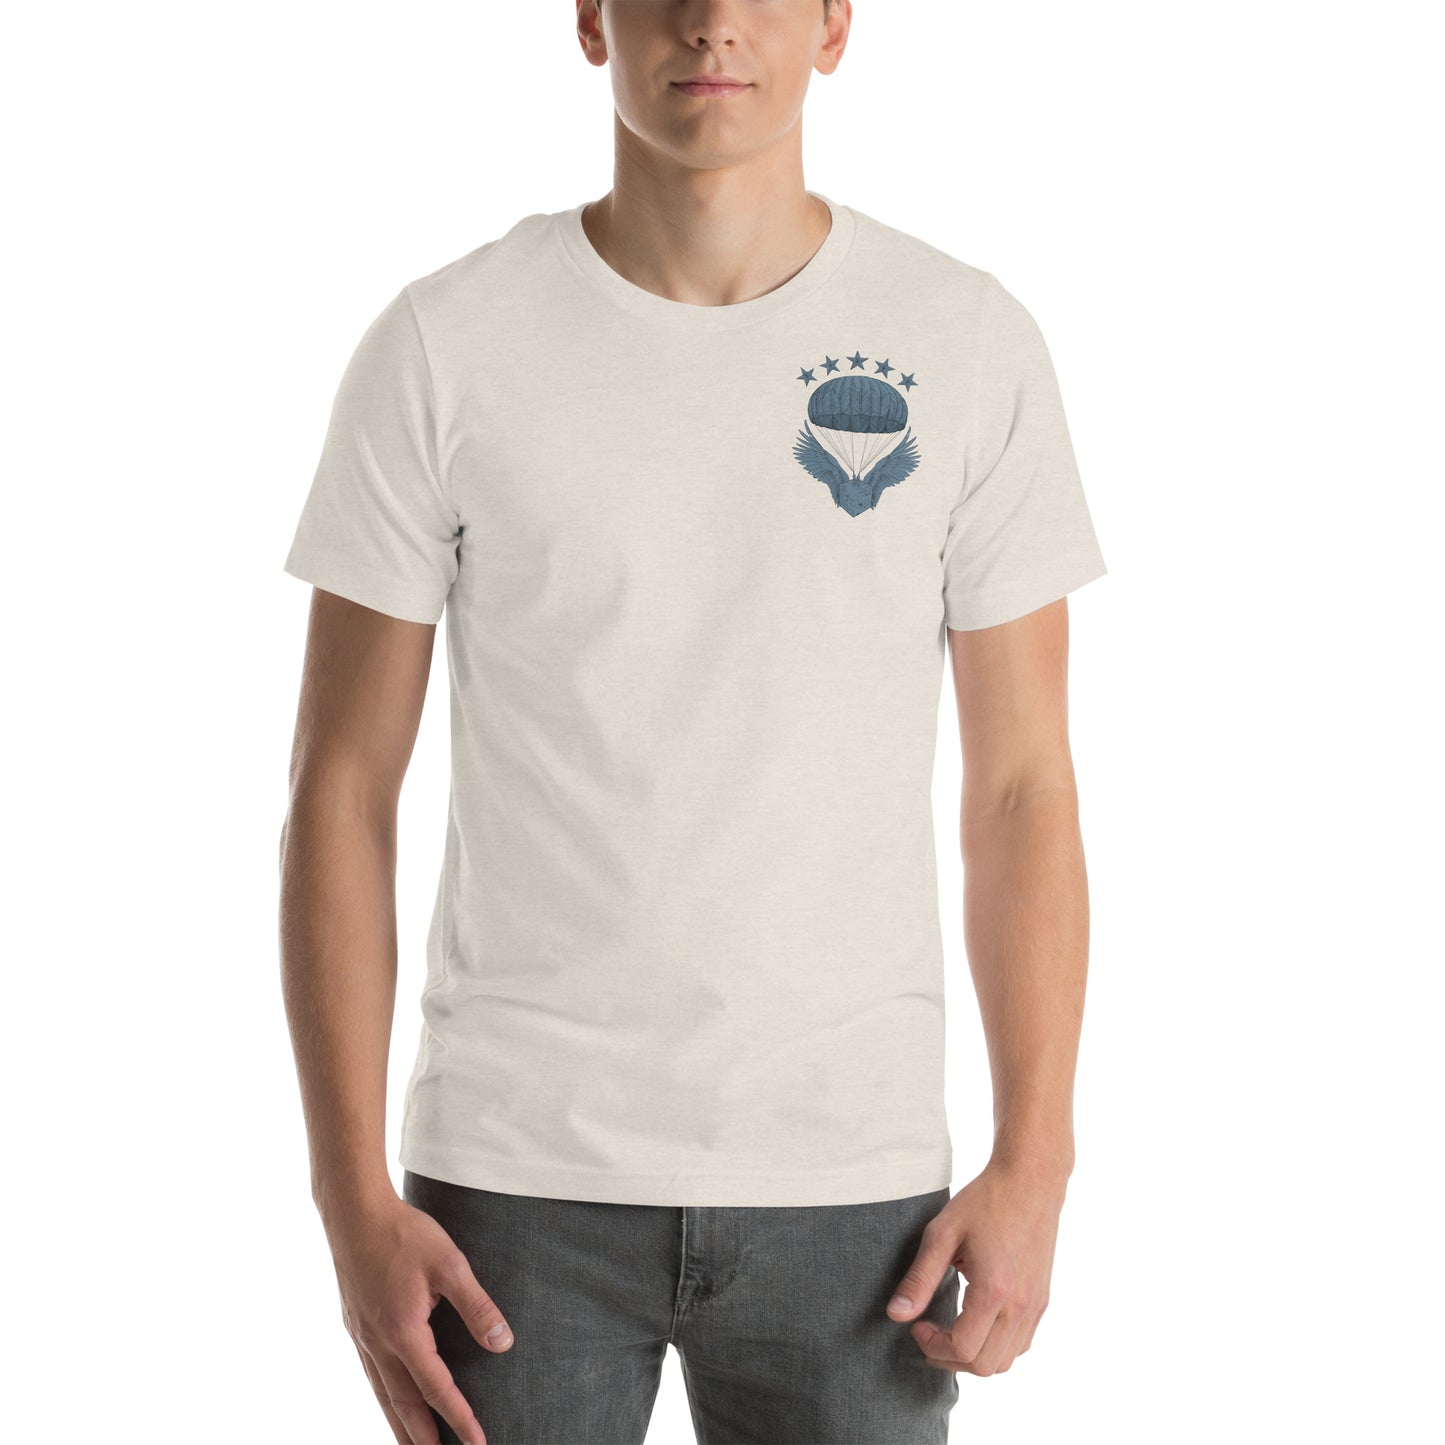 T-shirt unisexe - Calvaire Drach - Soutien Commando